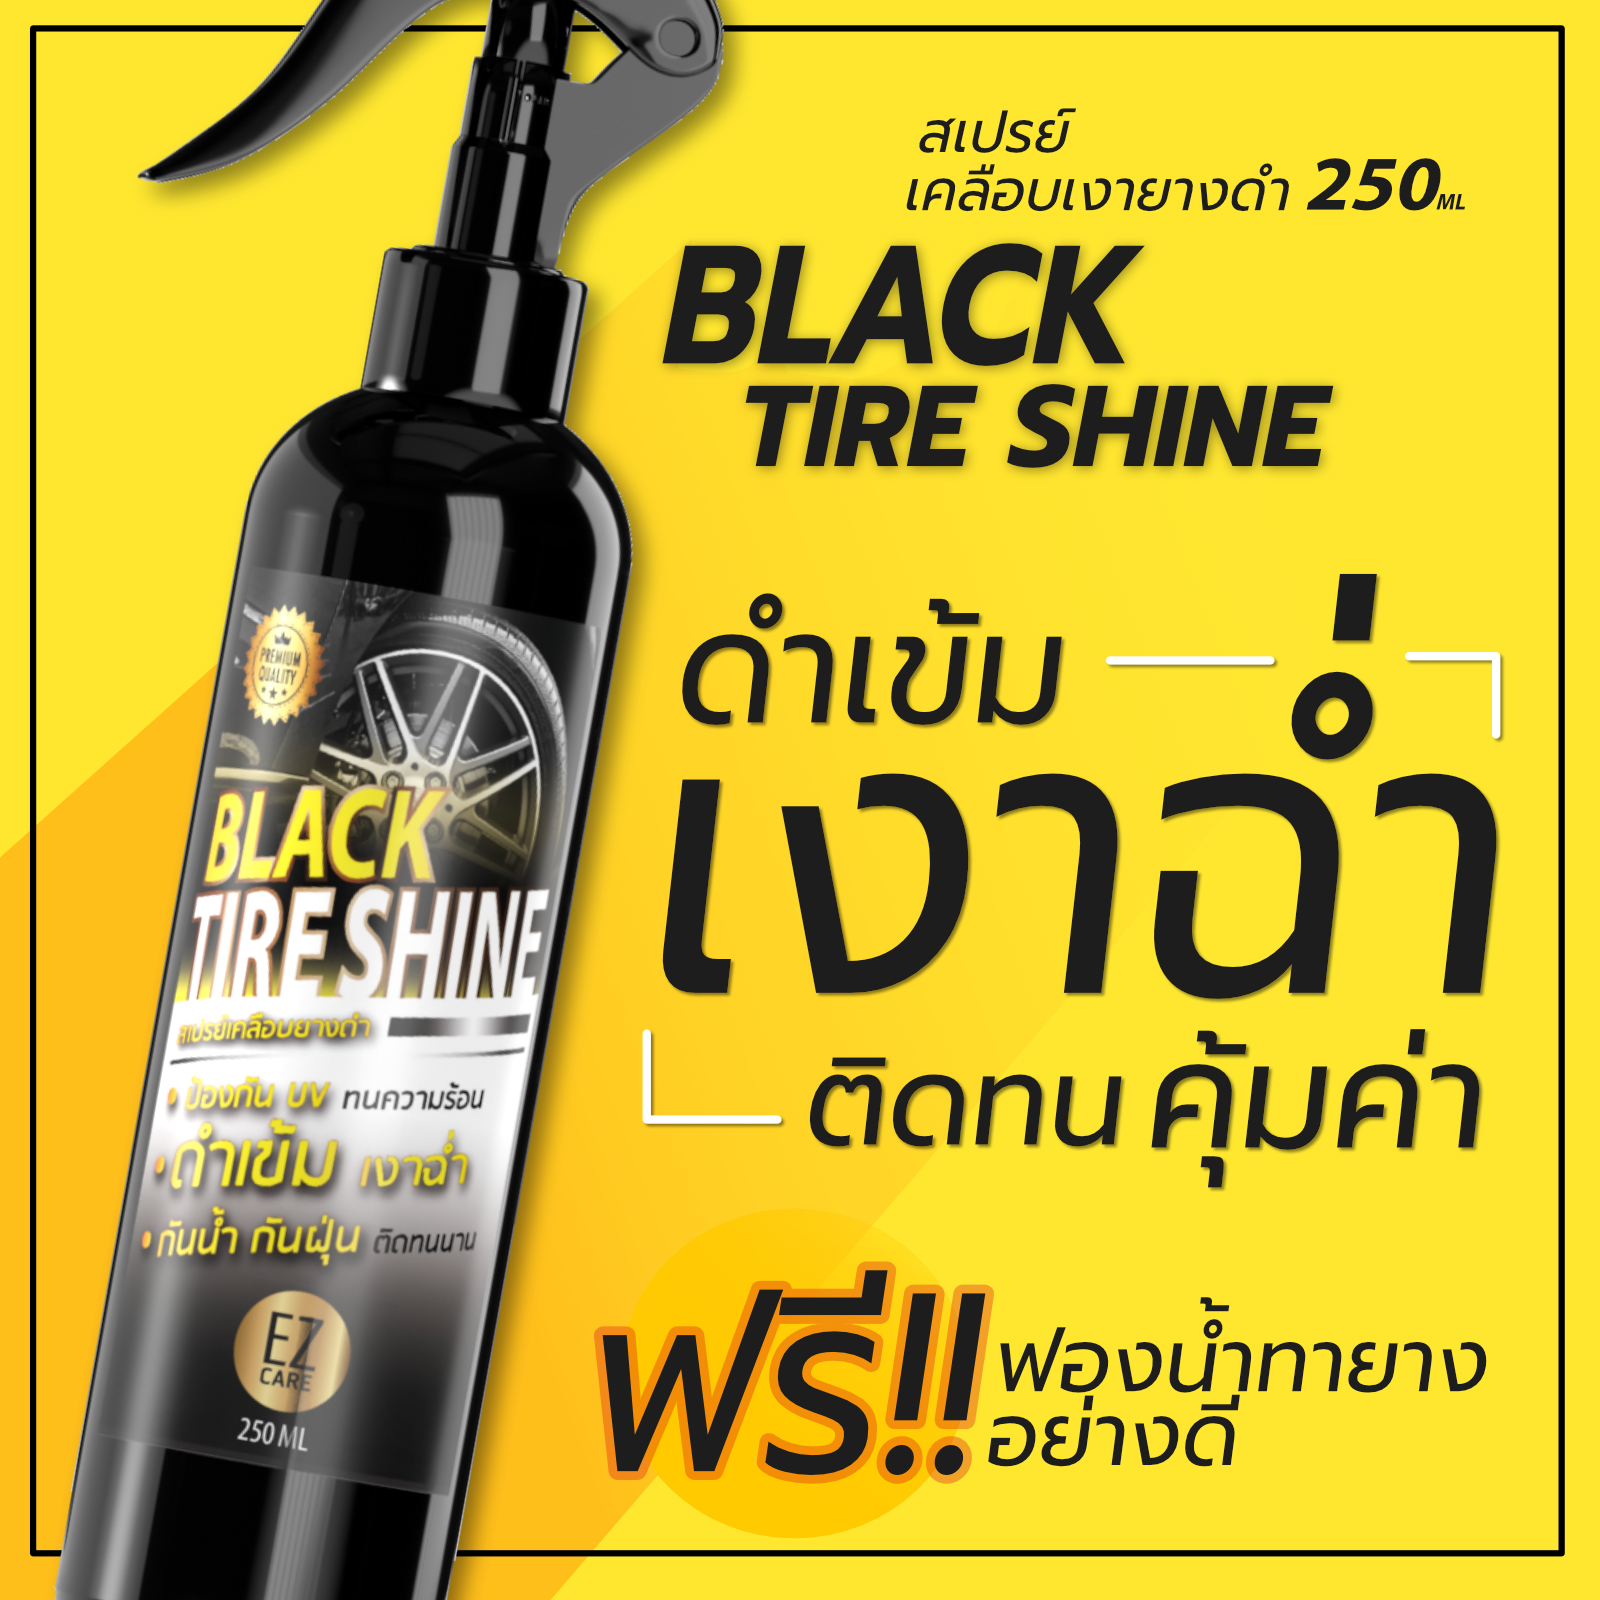 น้ำยาเคลือบยางดำ ทายางดำ Black Tire Shine สูตร Silicone Oil 250ml. แถมฟองน้ำทายาง 1 อัน